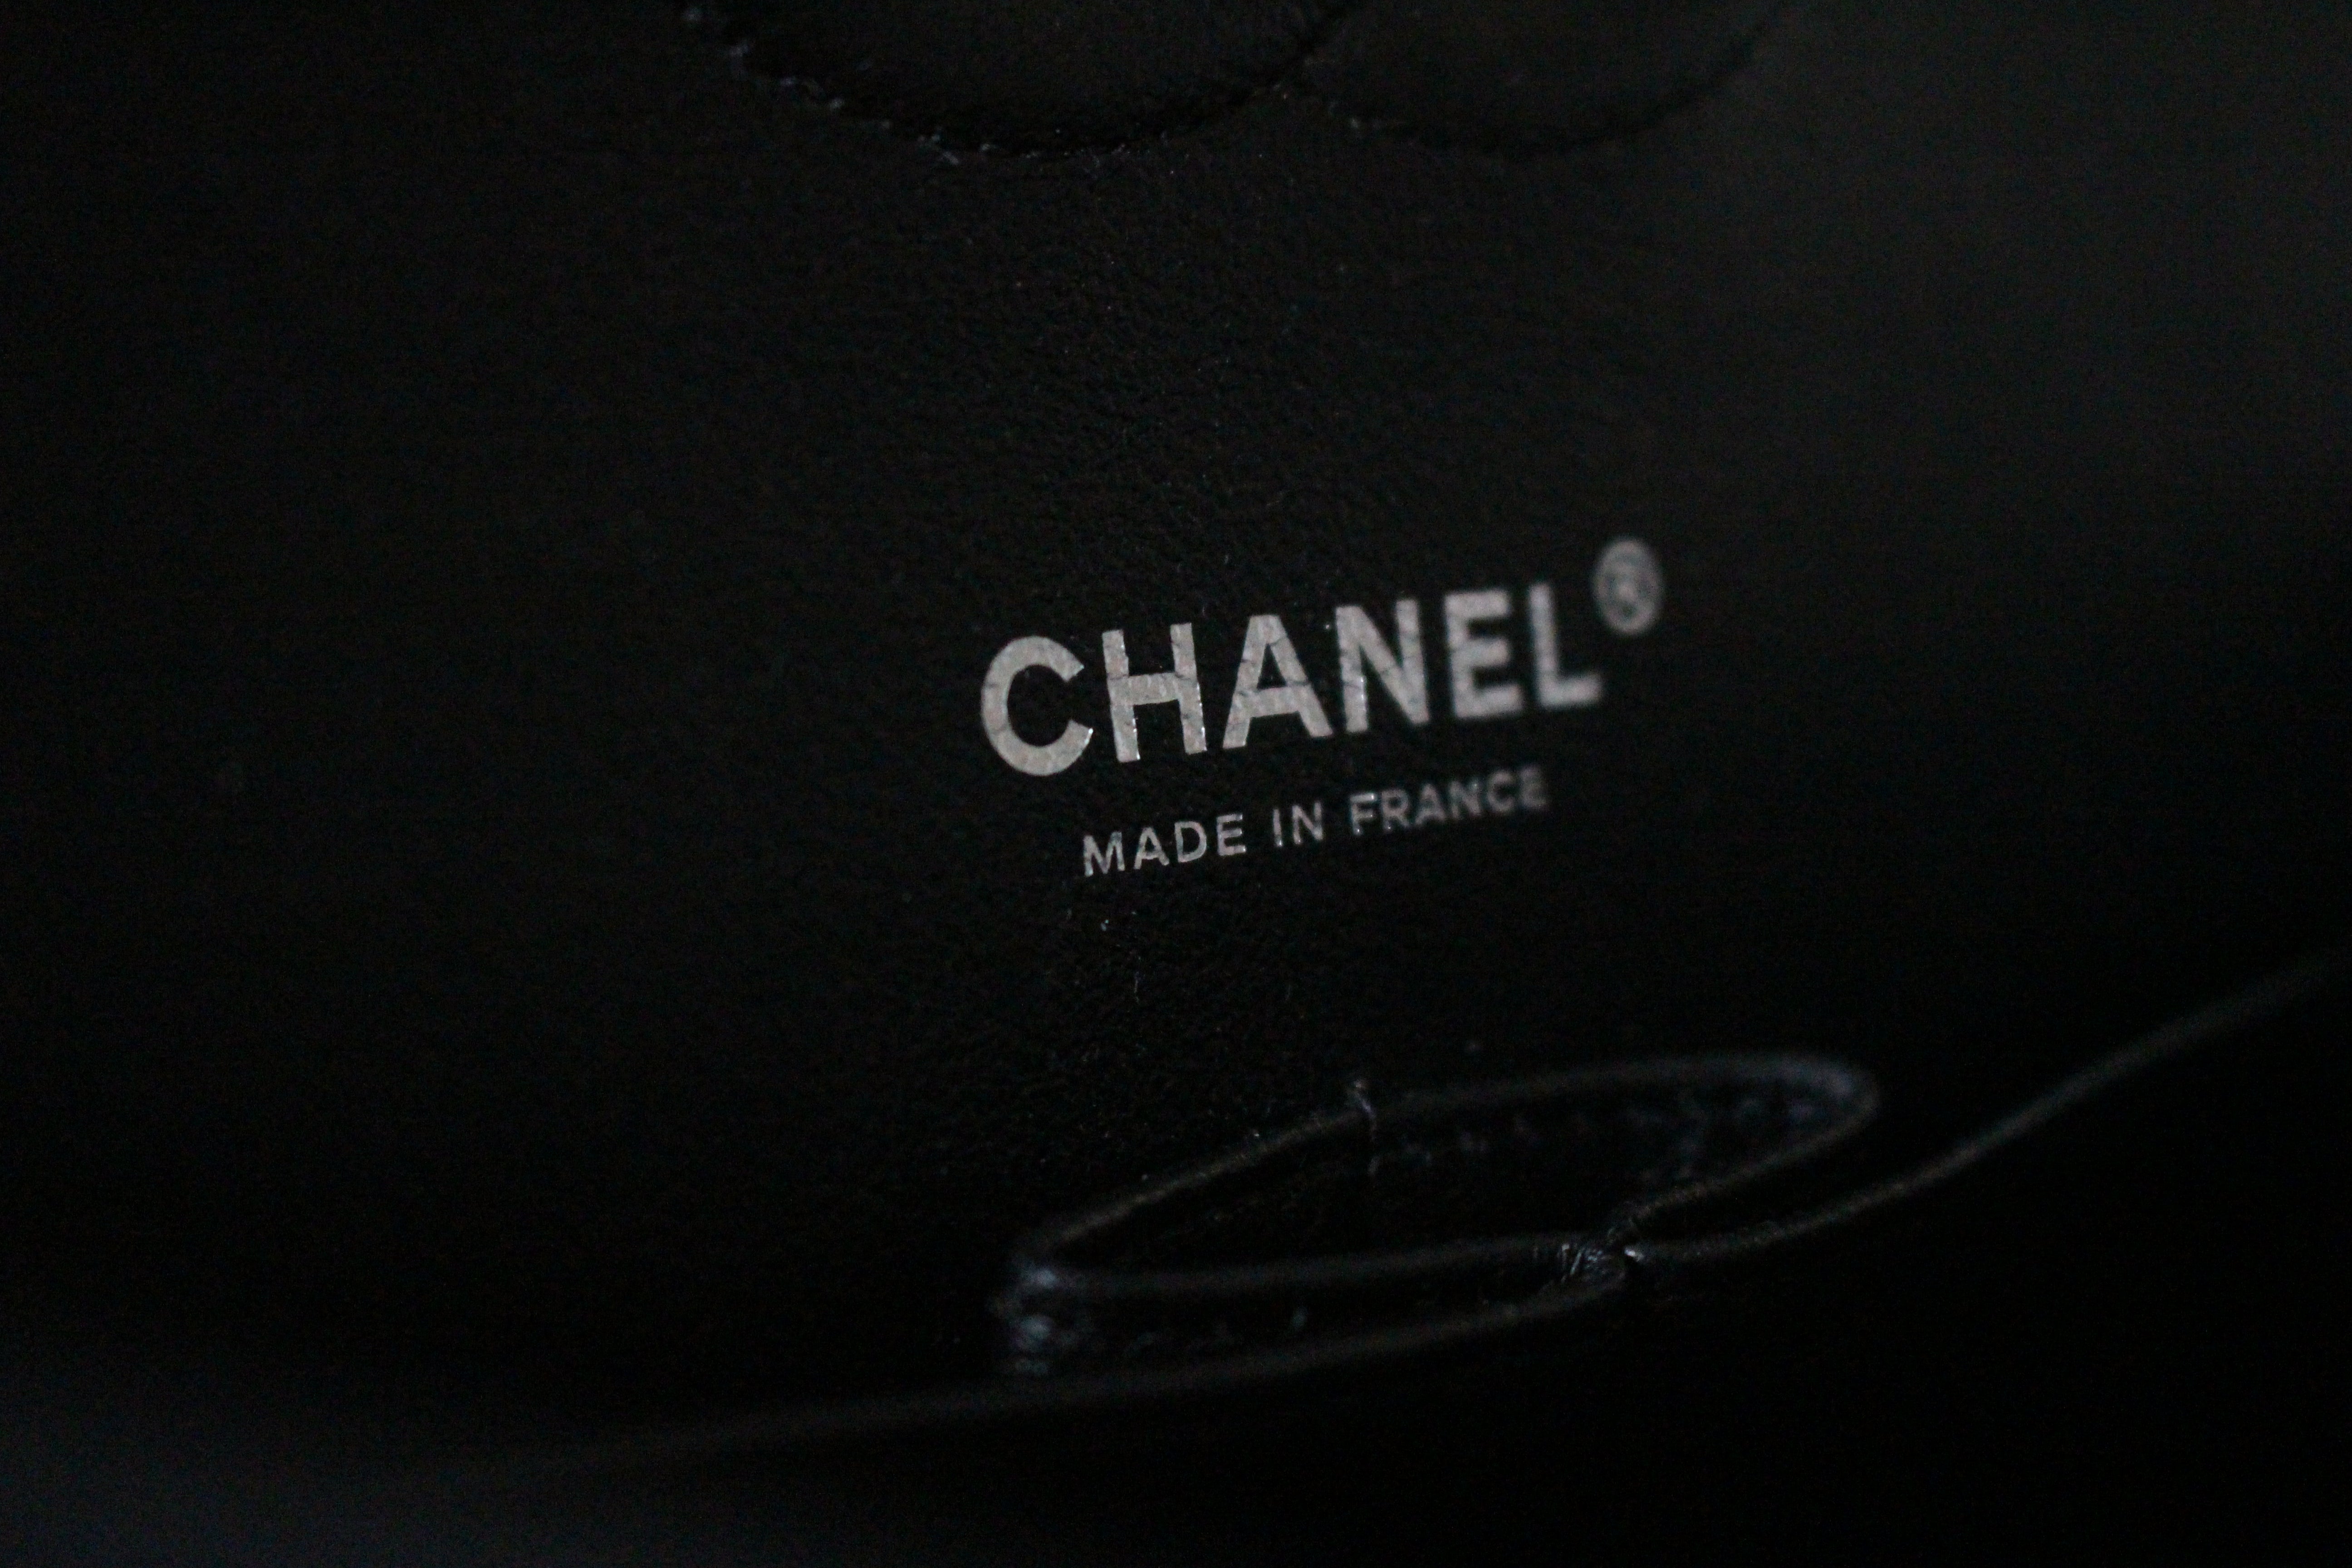 Chanel 19 Handbag Organizer Insert – ByAsteria